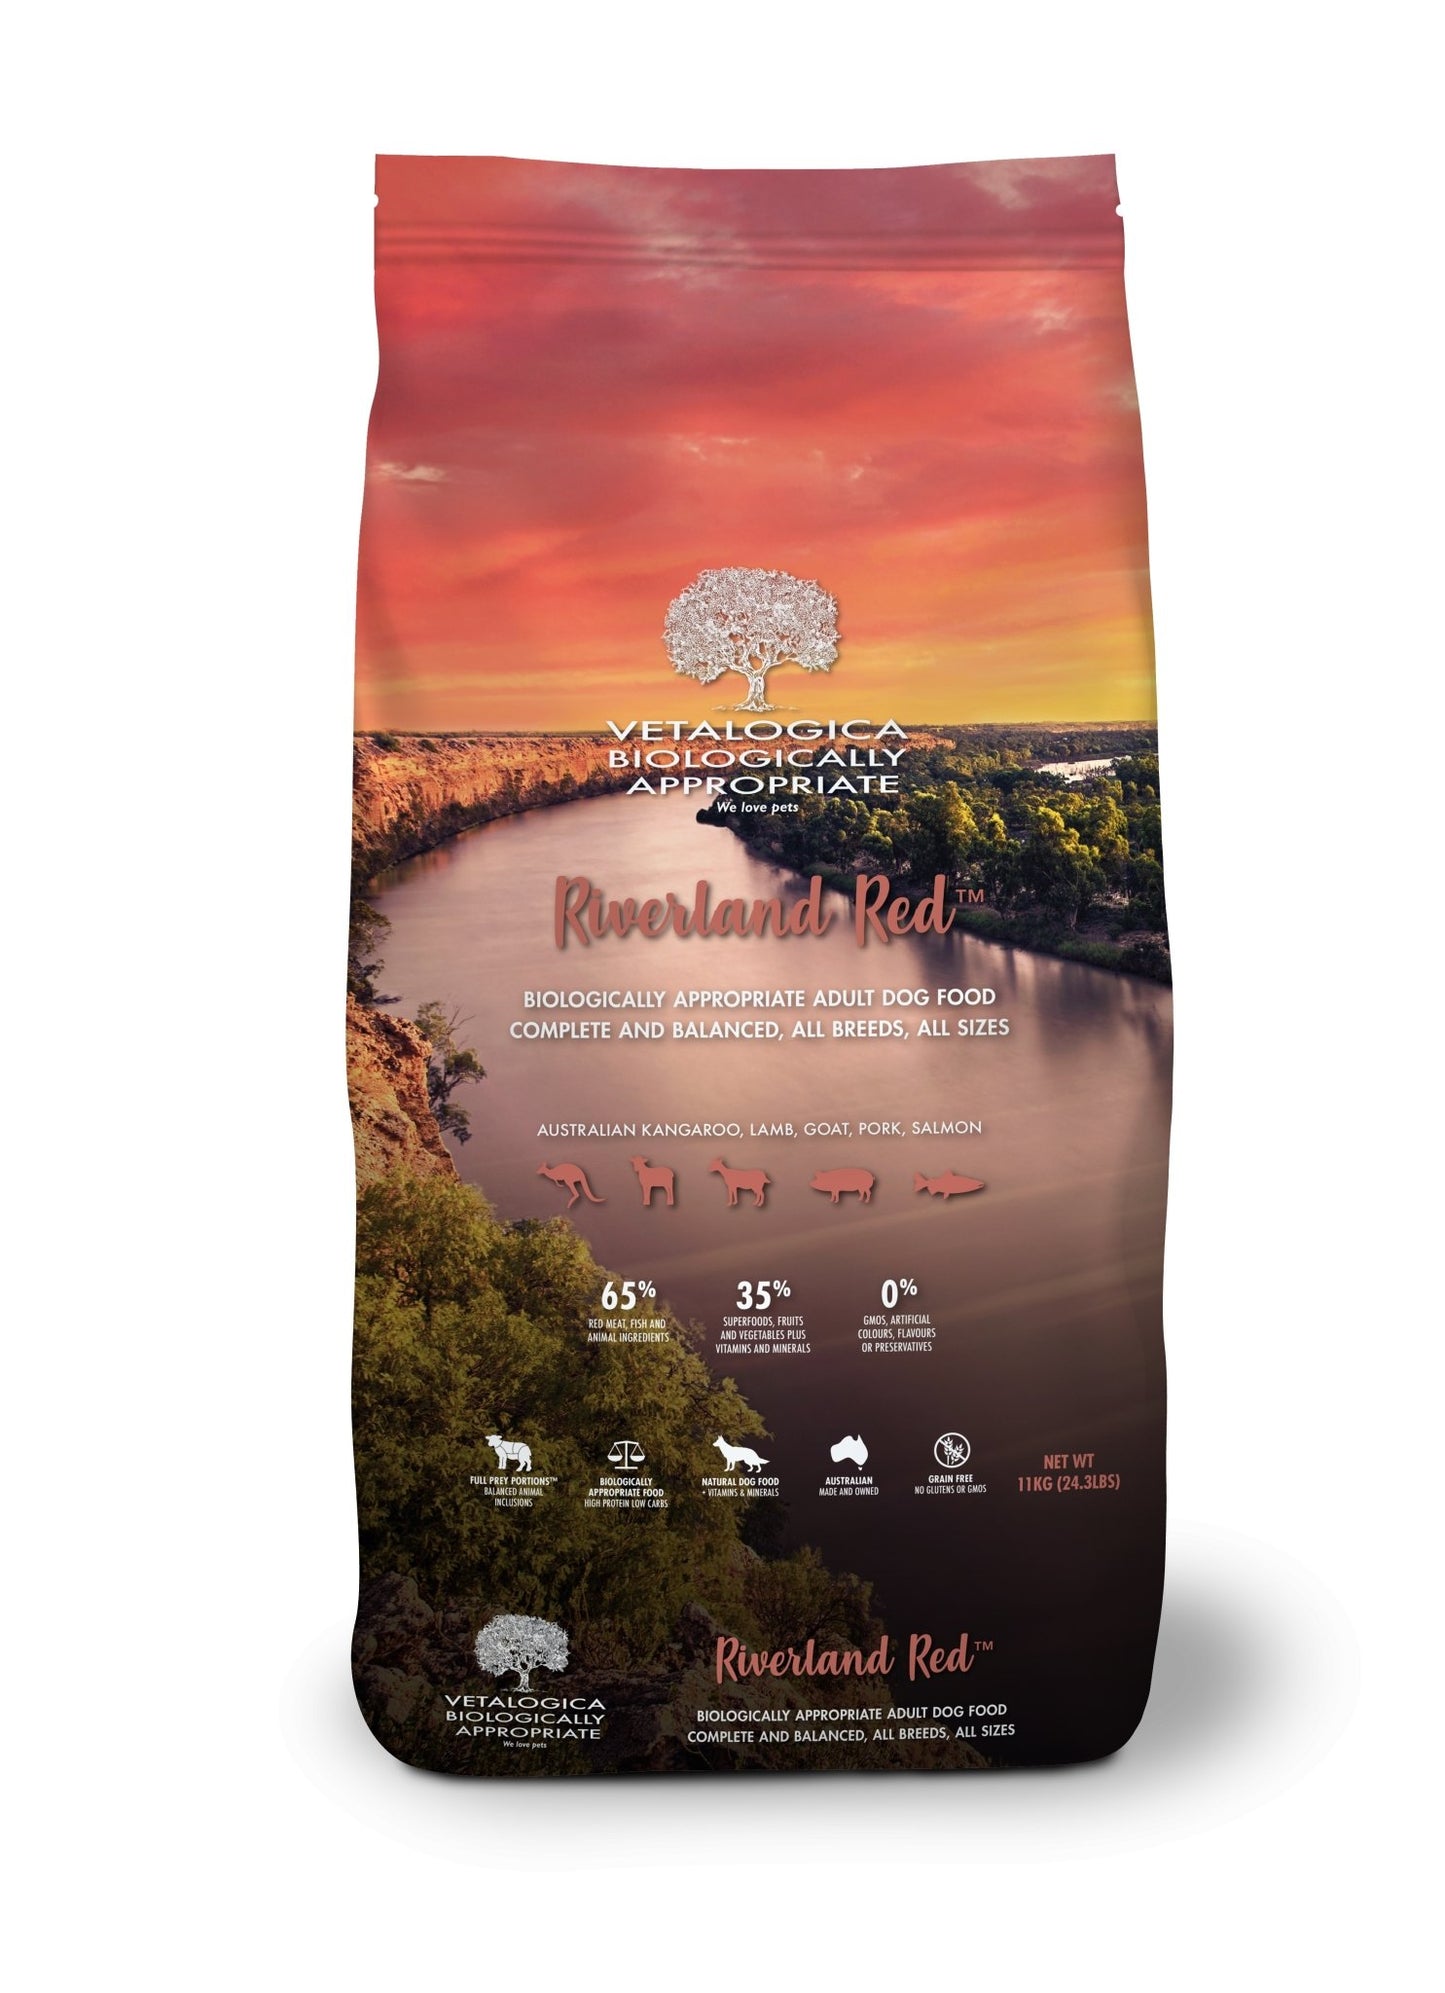 Vetalogica Biologically Approved Riverland Red Adult Dog Food 11kg - Woonona Petfood & Produce